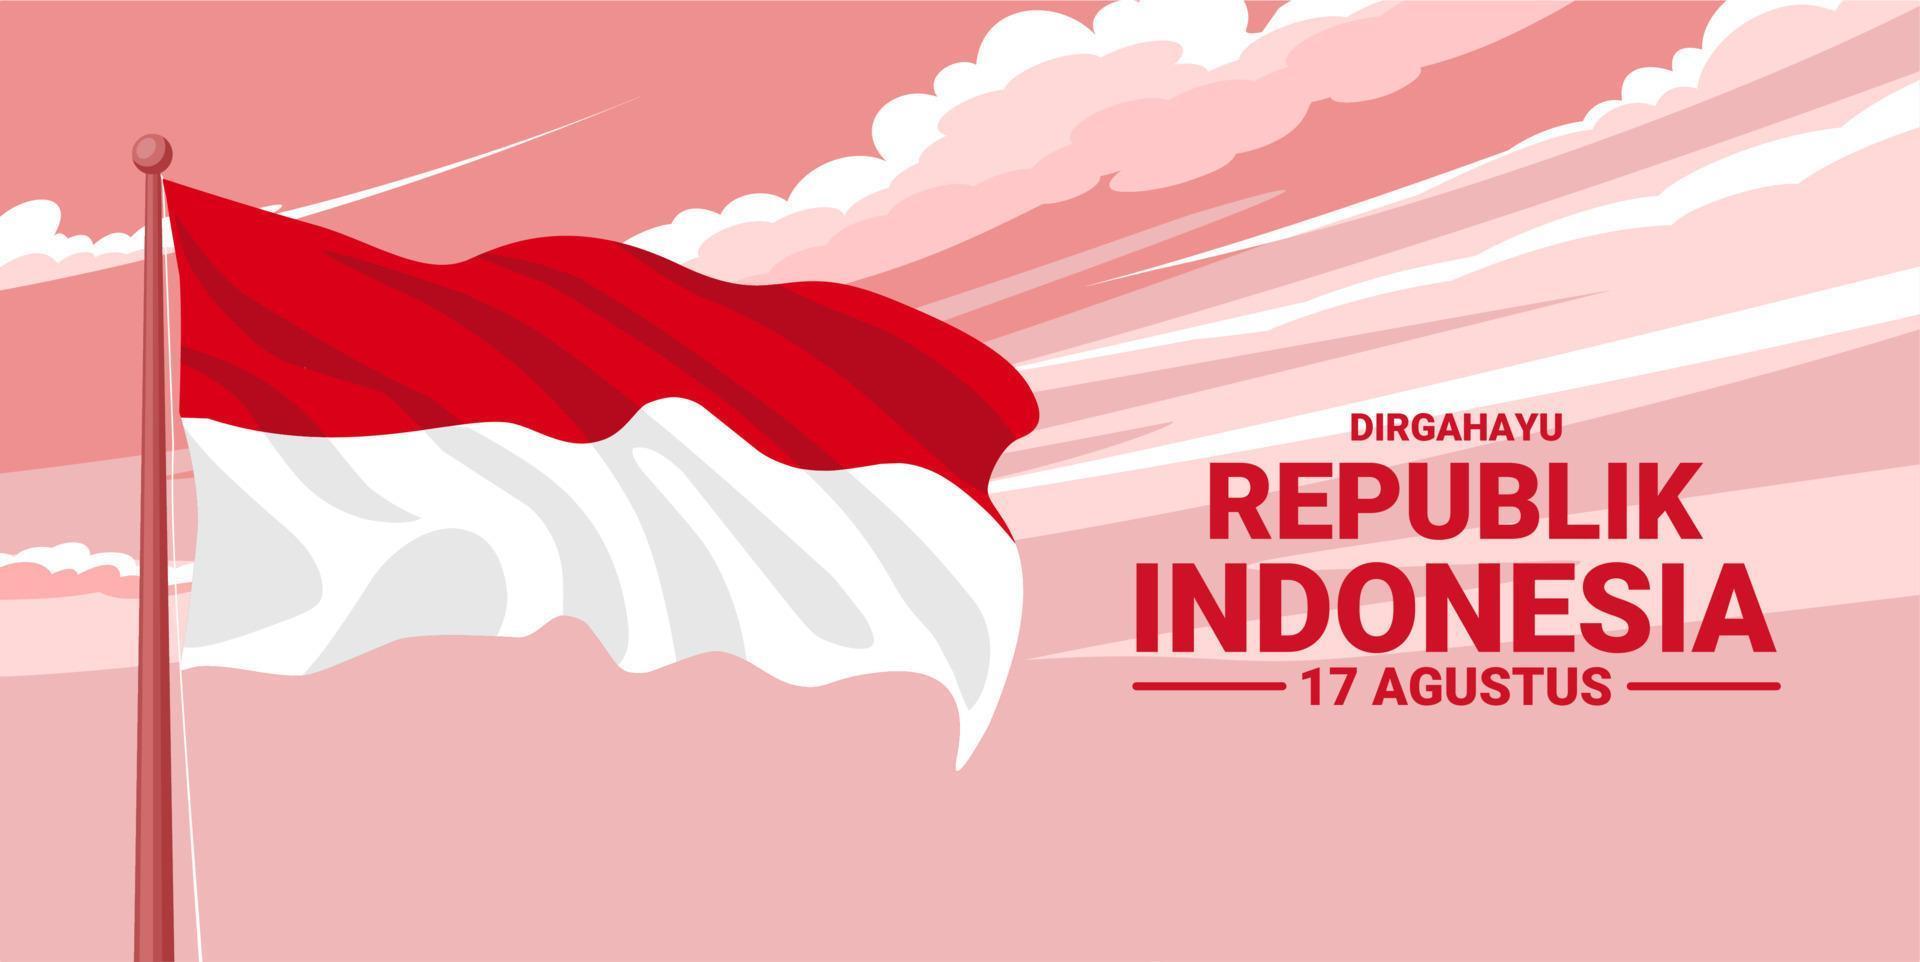 gelukkige indonesische onafhankelijkheidsdag, dirgahayu republik indonesië, wat betekent dat lang leve indonesië, vectorillustratie. vector